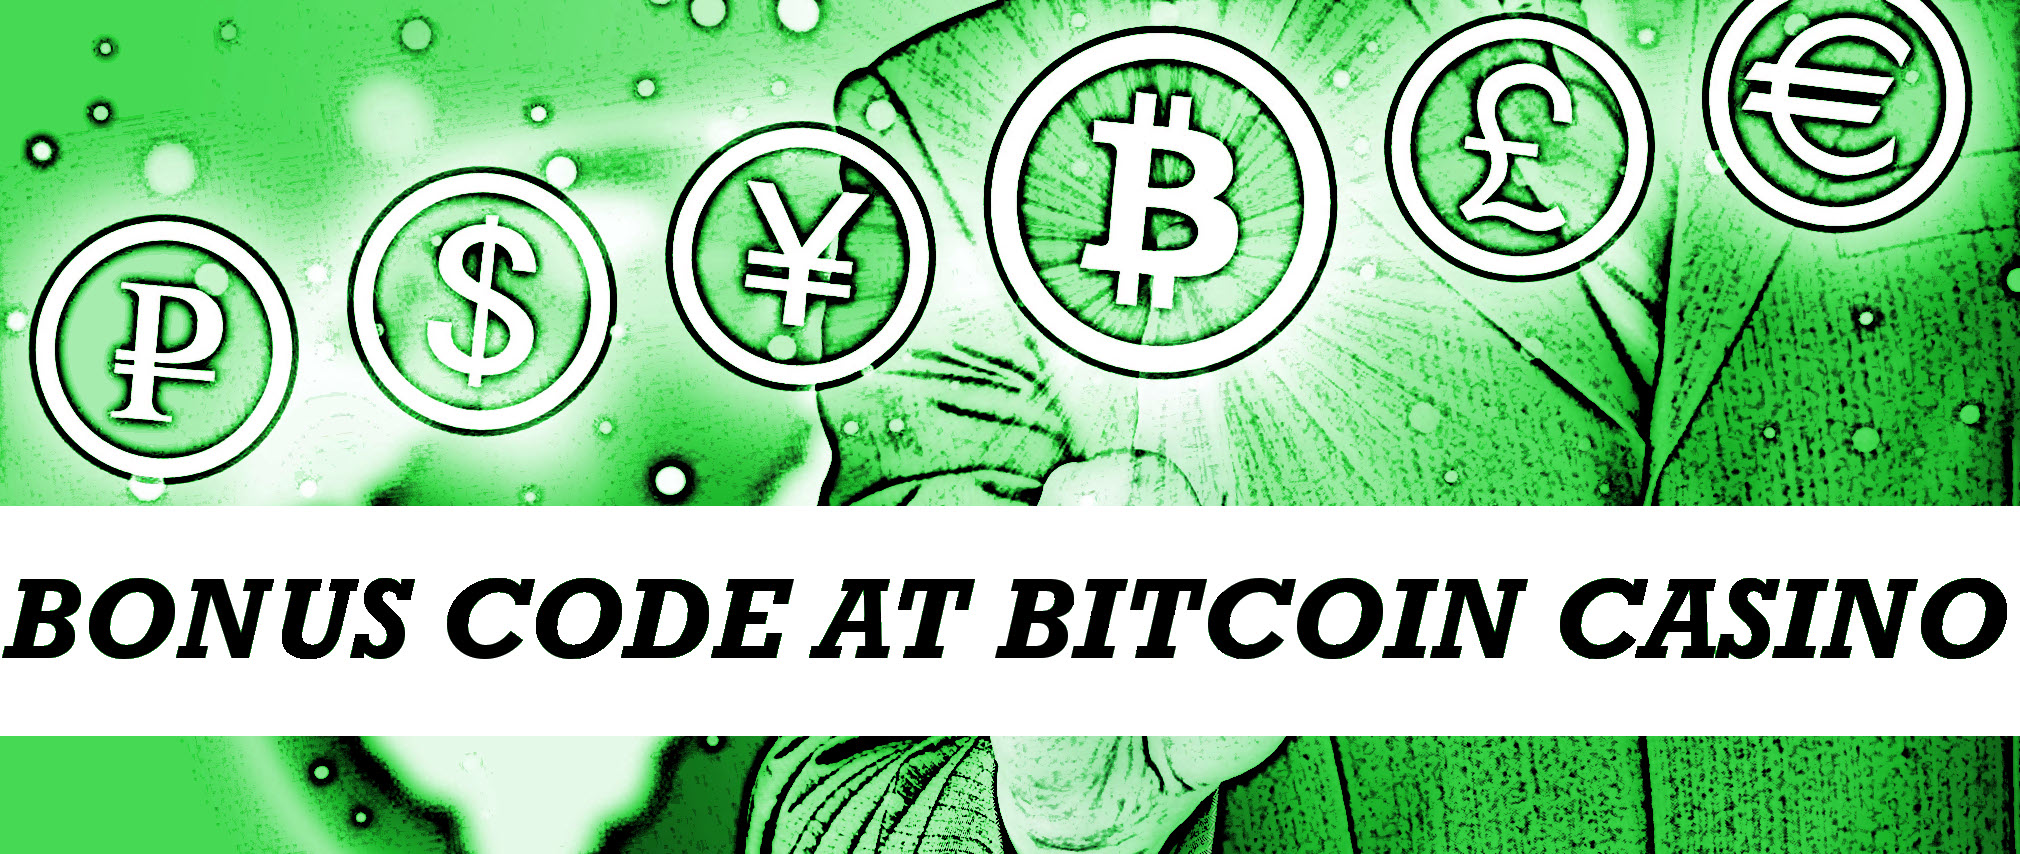 Bitcoin casino with bonus code